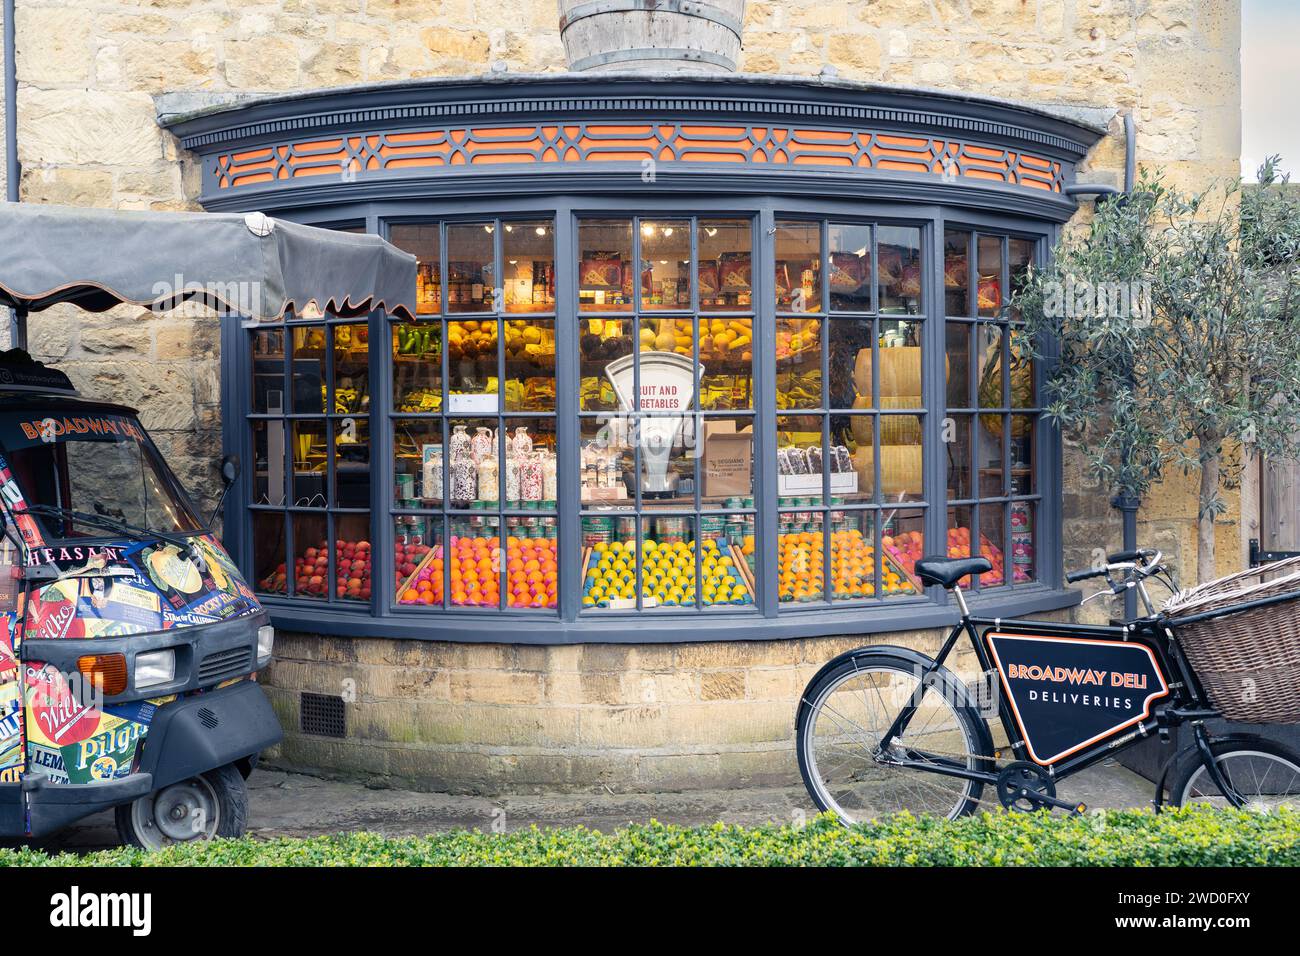 Frutas y verduras y una báscula de pesaje anticuada en la ventana del Broadway Deli, con una bicicleta de reparto en el exterior. Broadway Foto de stock